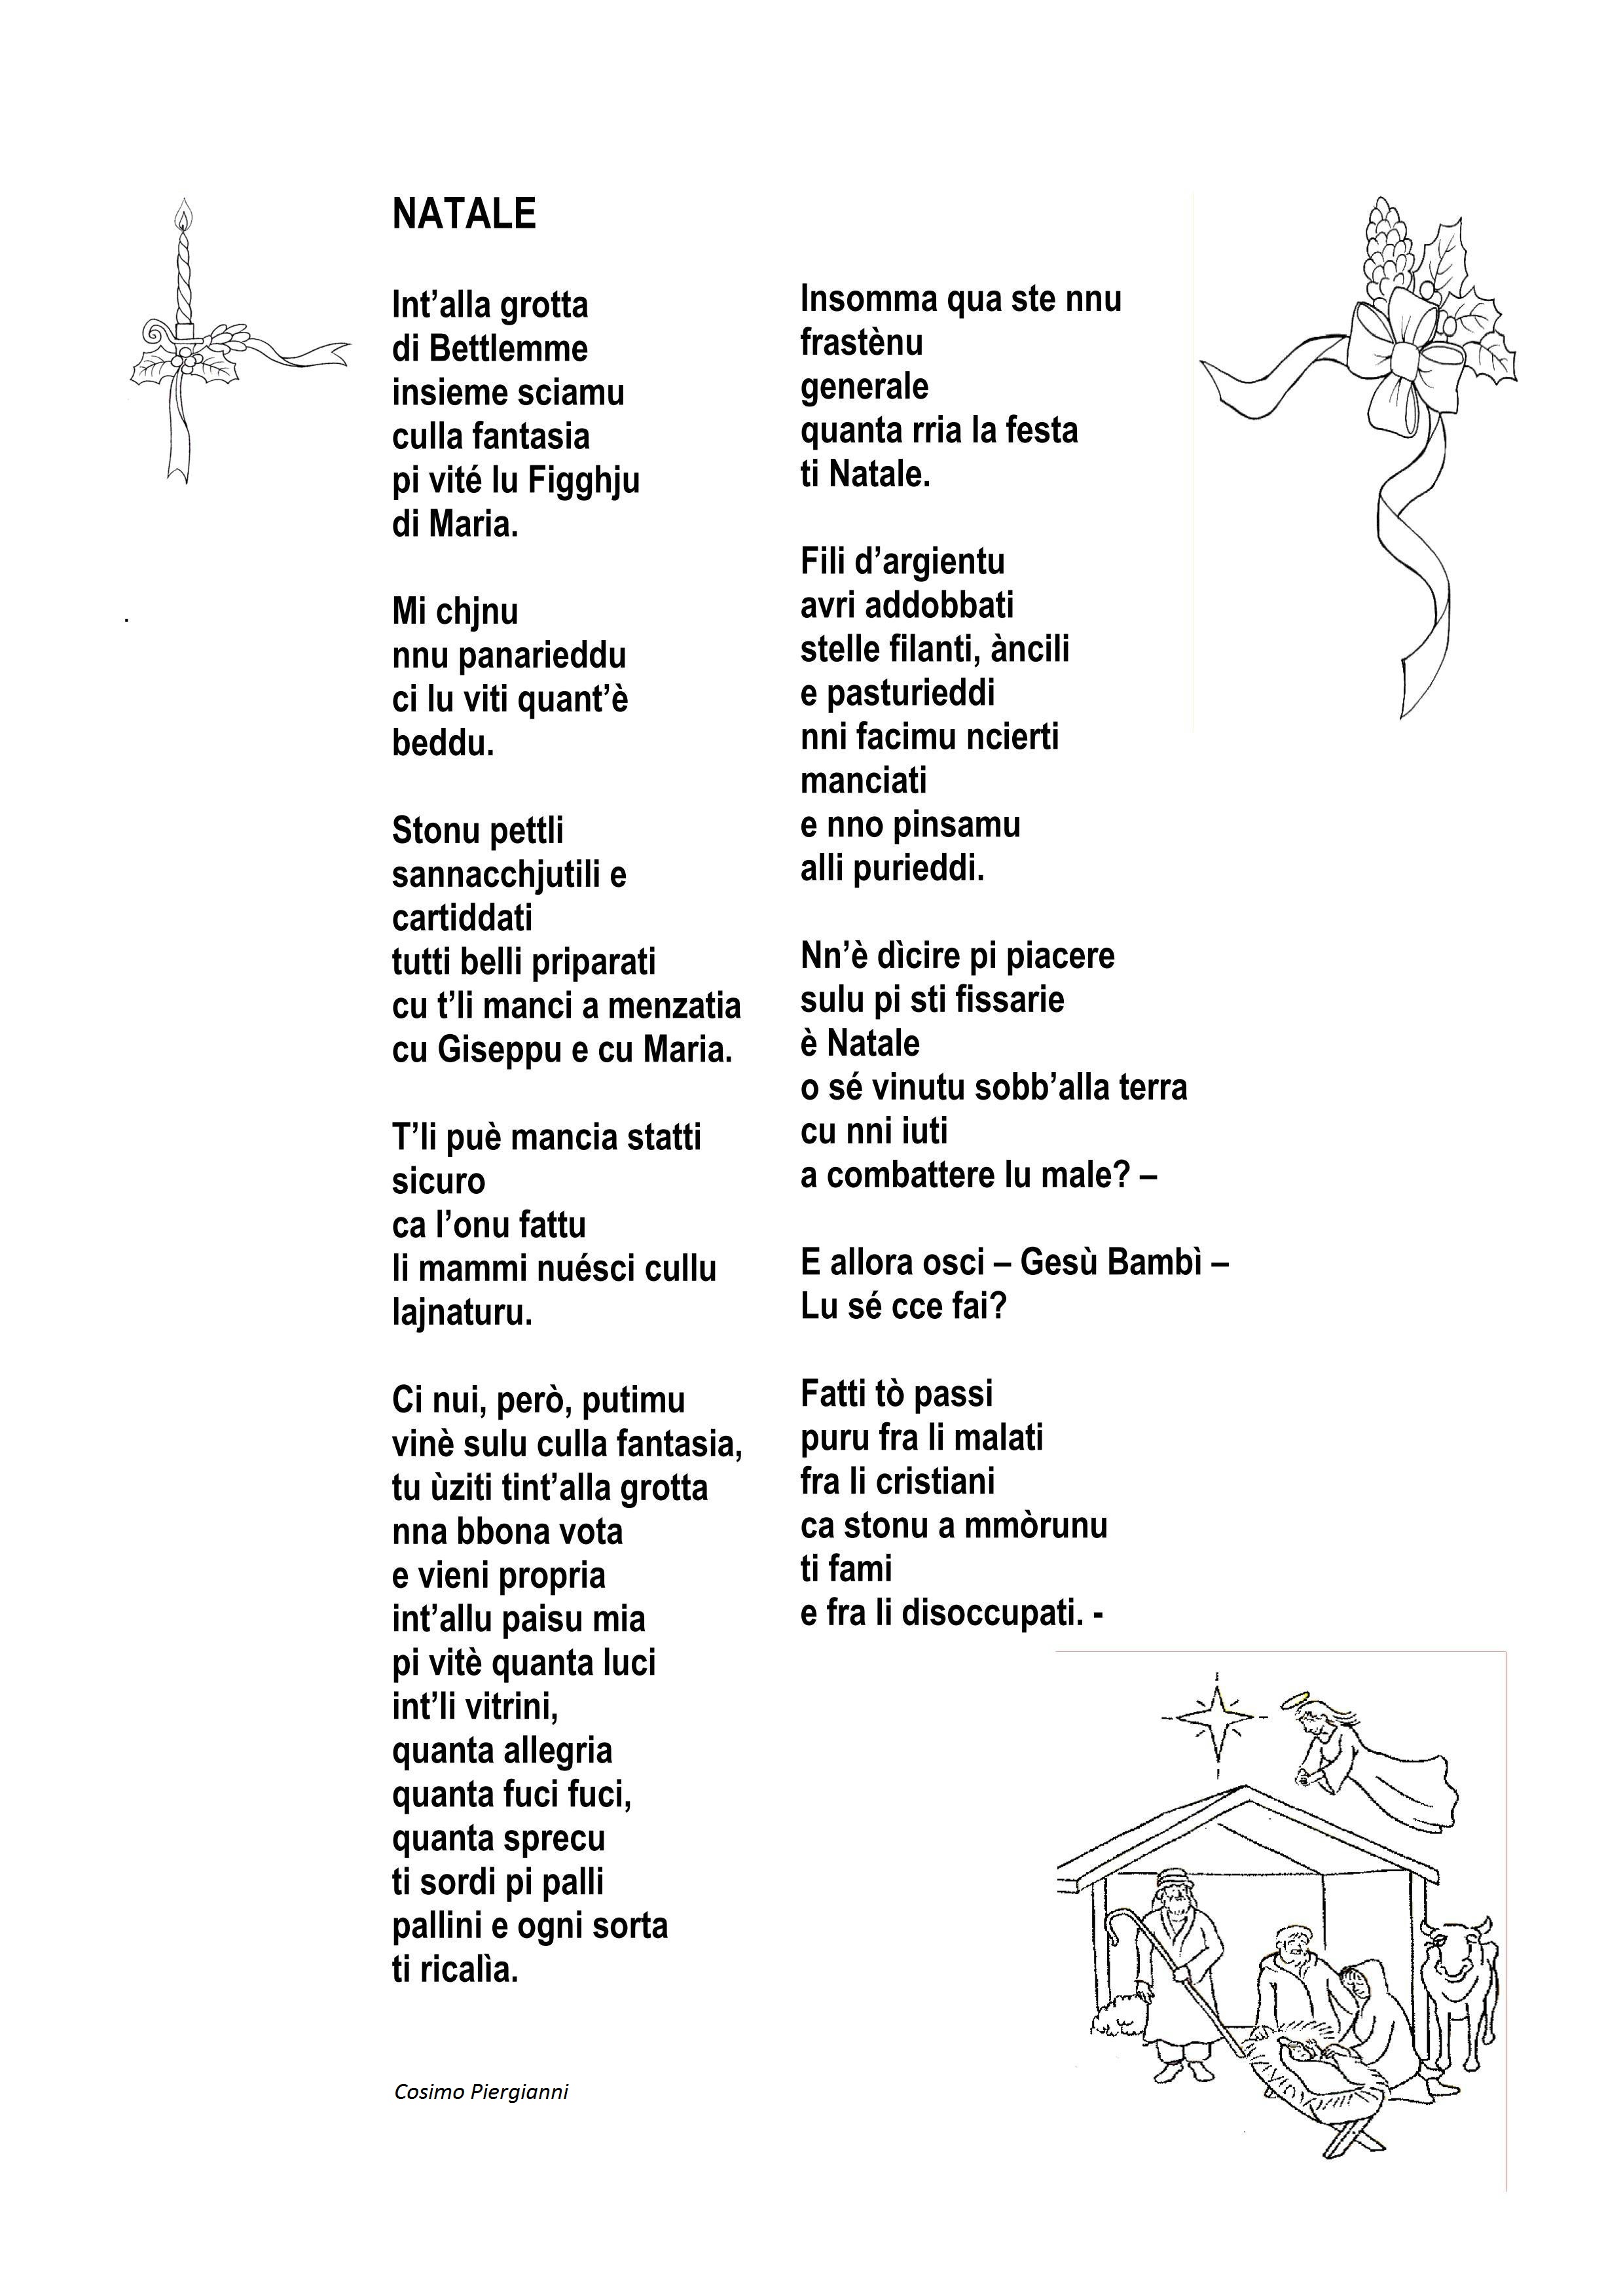 Poesie Di Natale In Dialetto Siciliano Per Bambini.Antologia Di Poesie Dialettali Per Natale Grottagliesita Blog